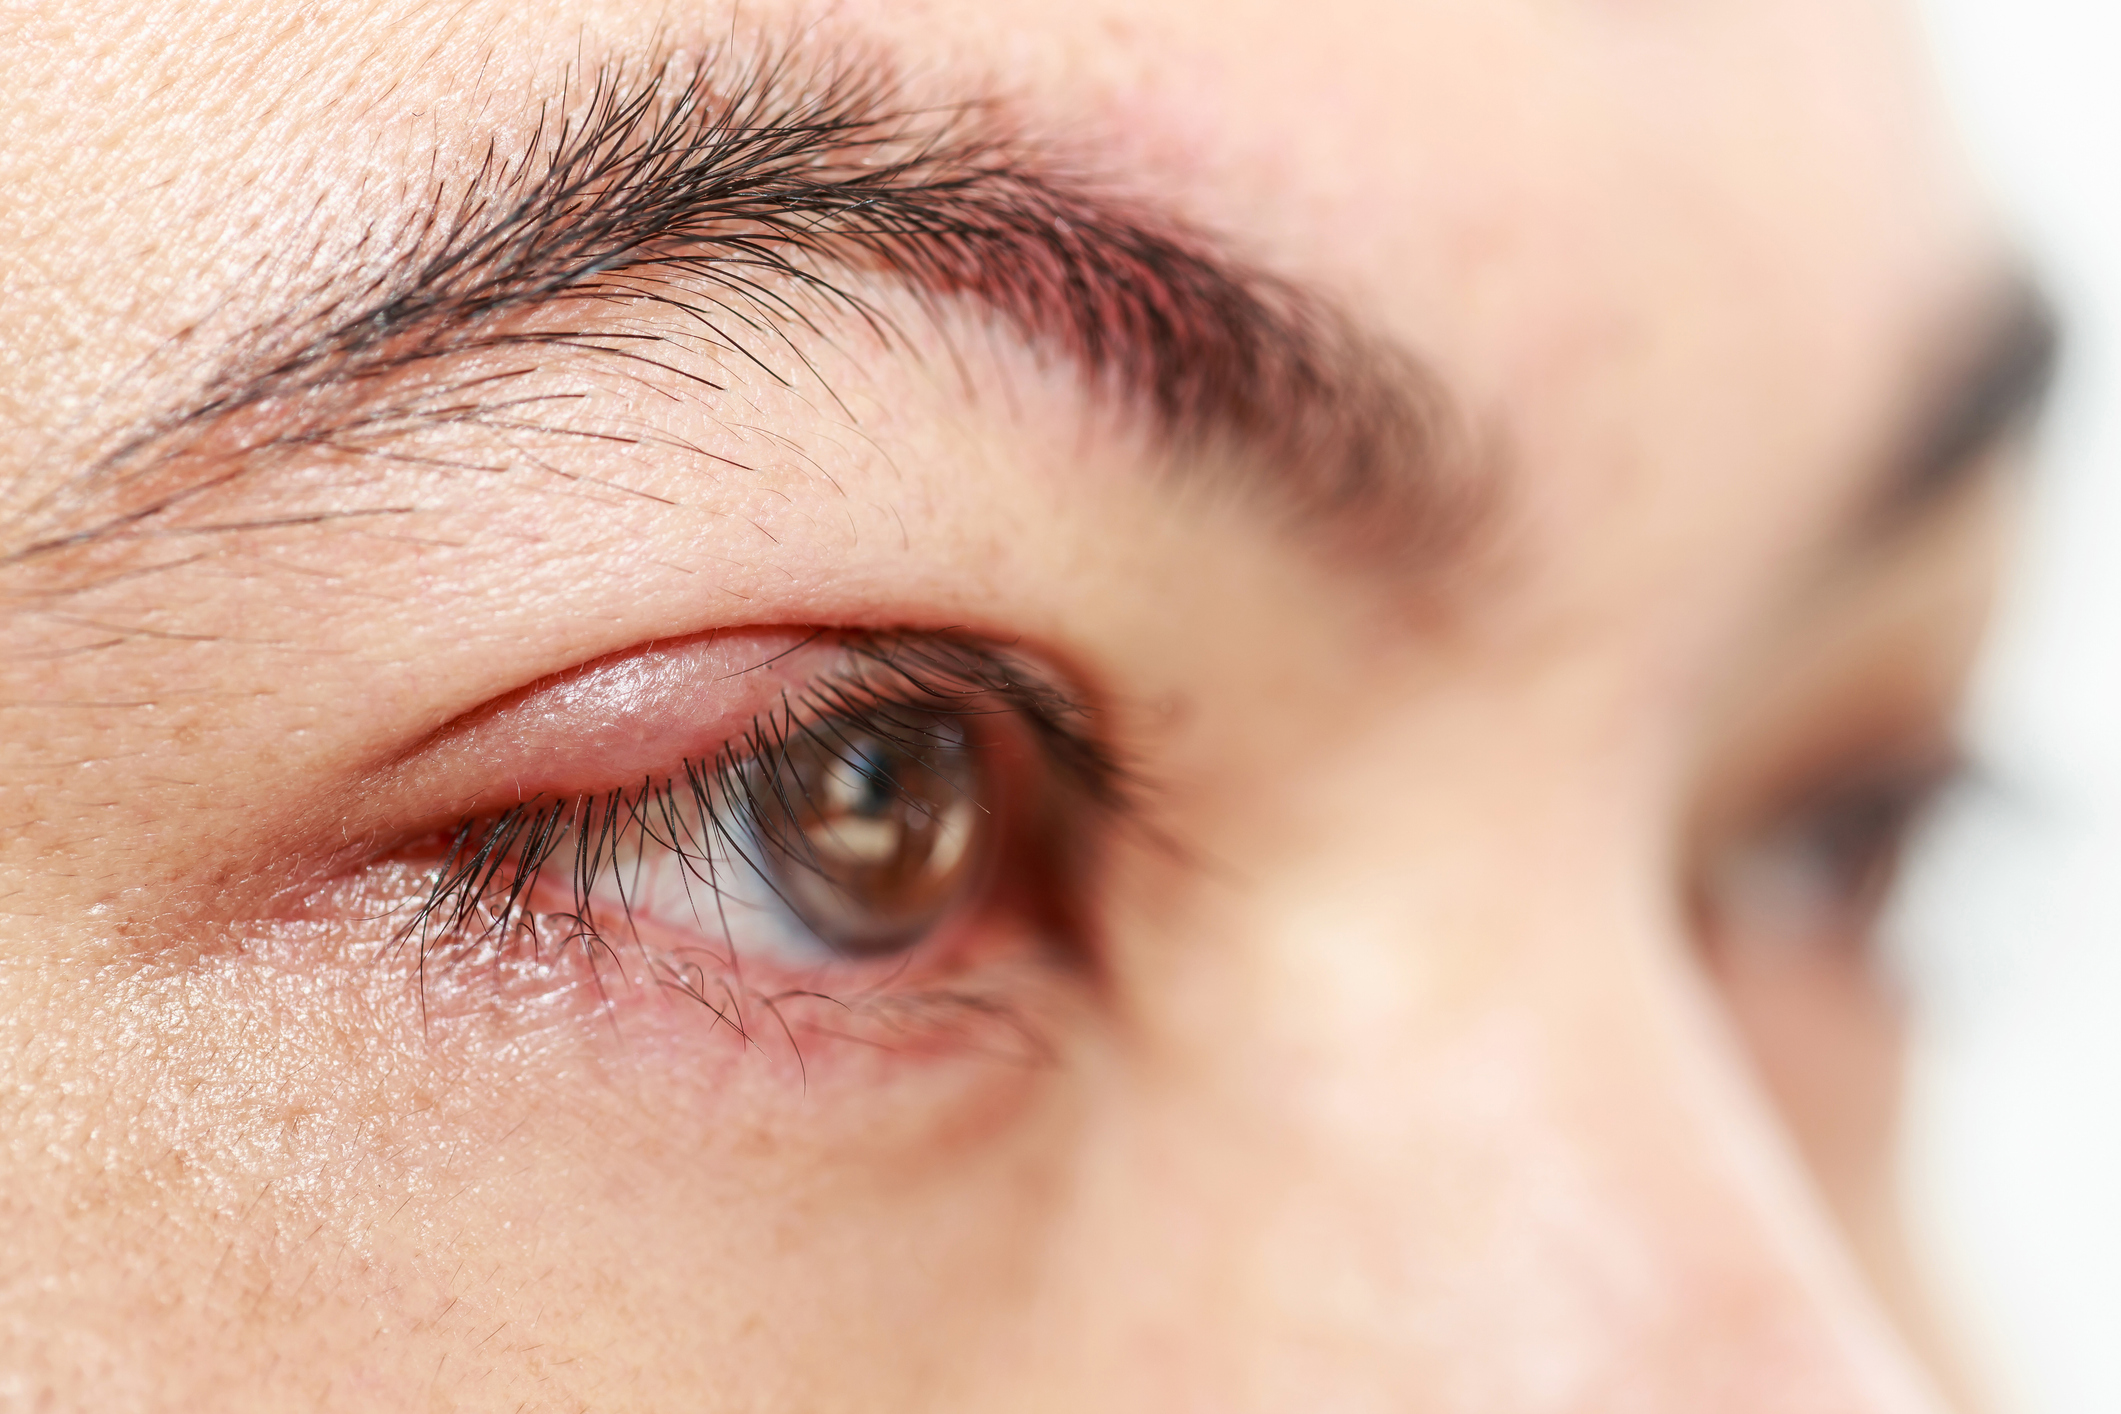 Jačmenné zrno či jačmeň na oku. Prečo vzniká, ako sa lieči? (Hordeolum + chalazion)